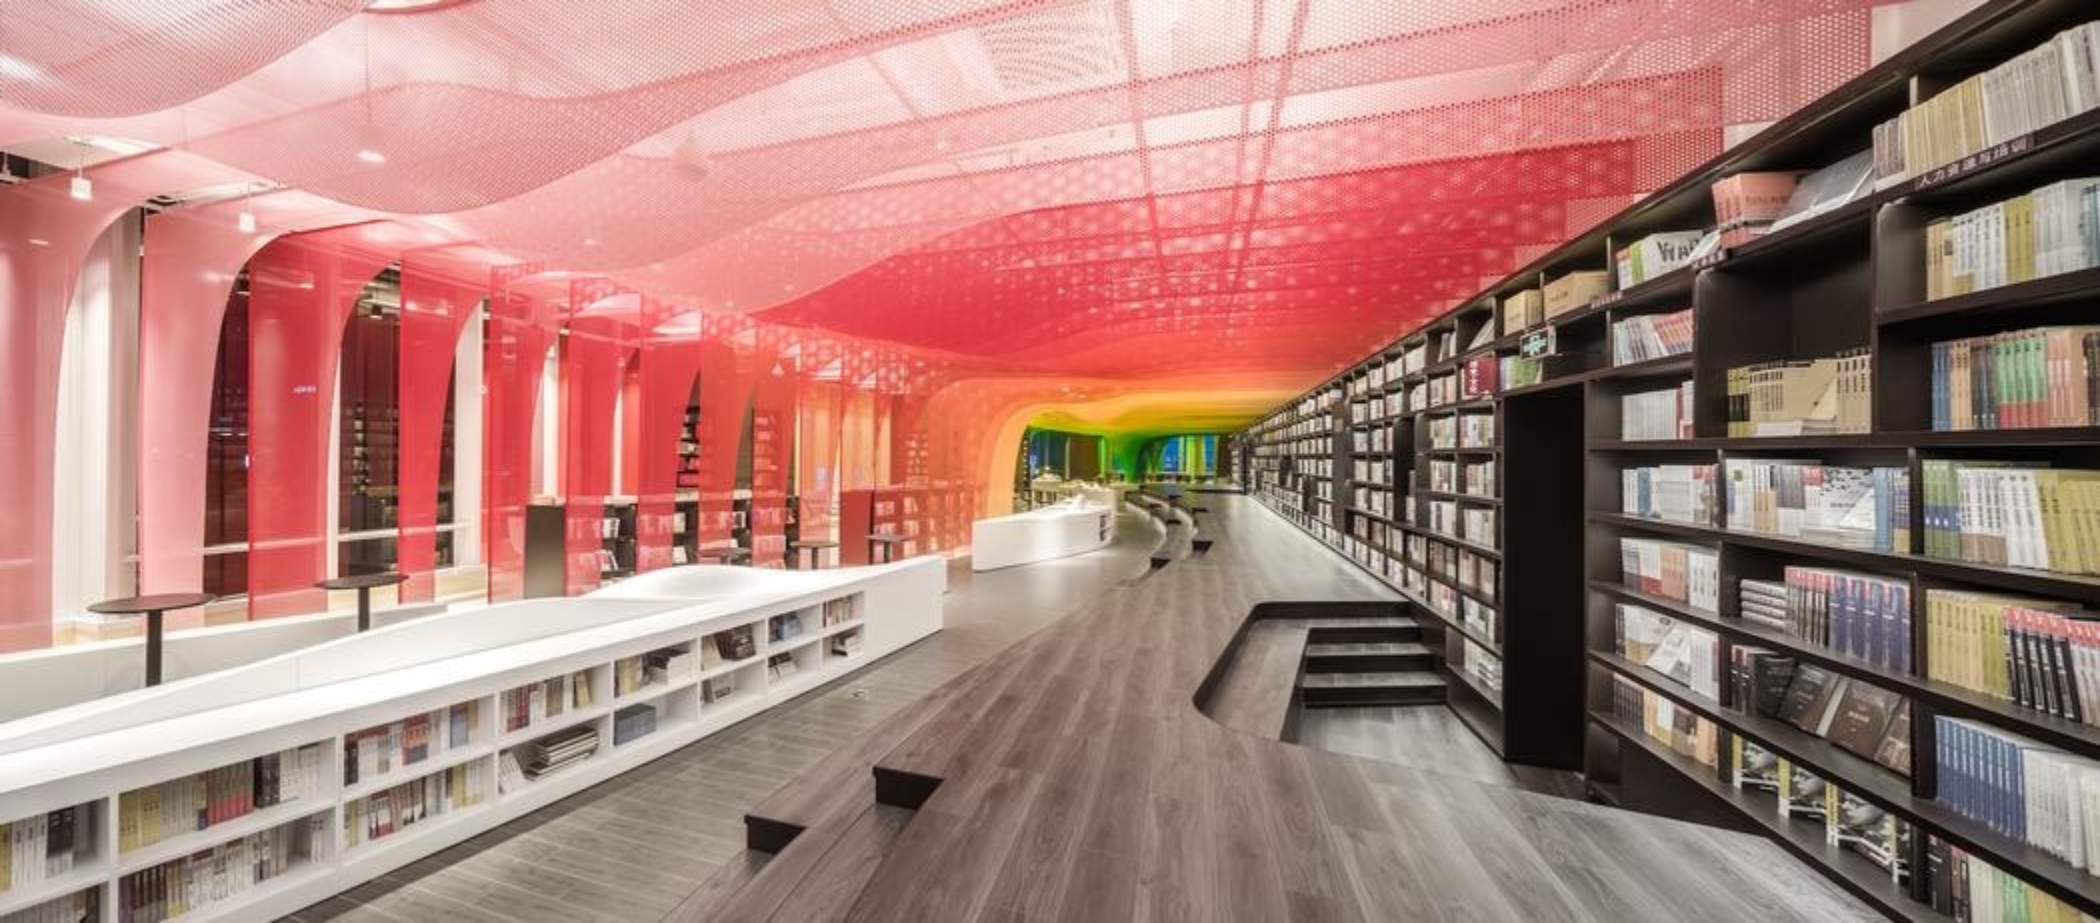 Фантастический интерьер книжного магазина в Китае